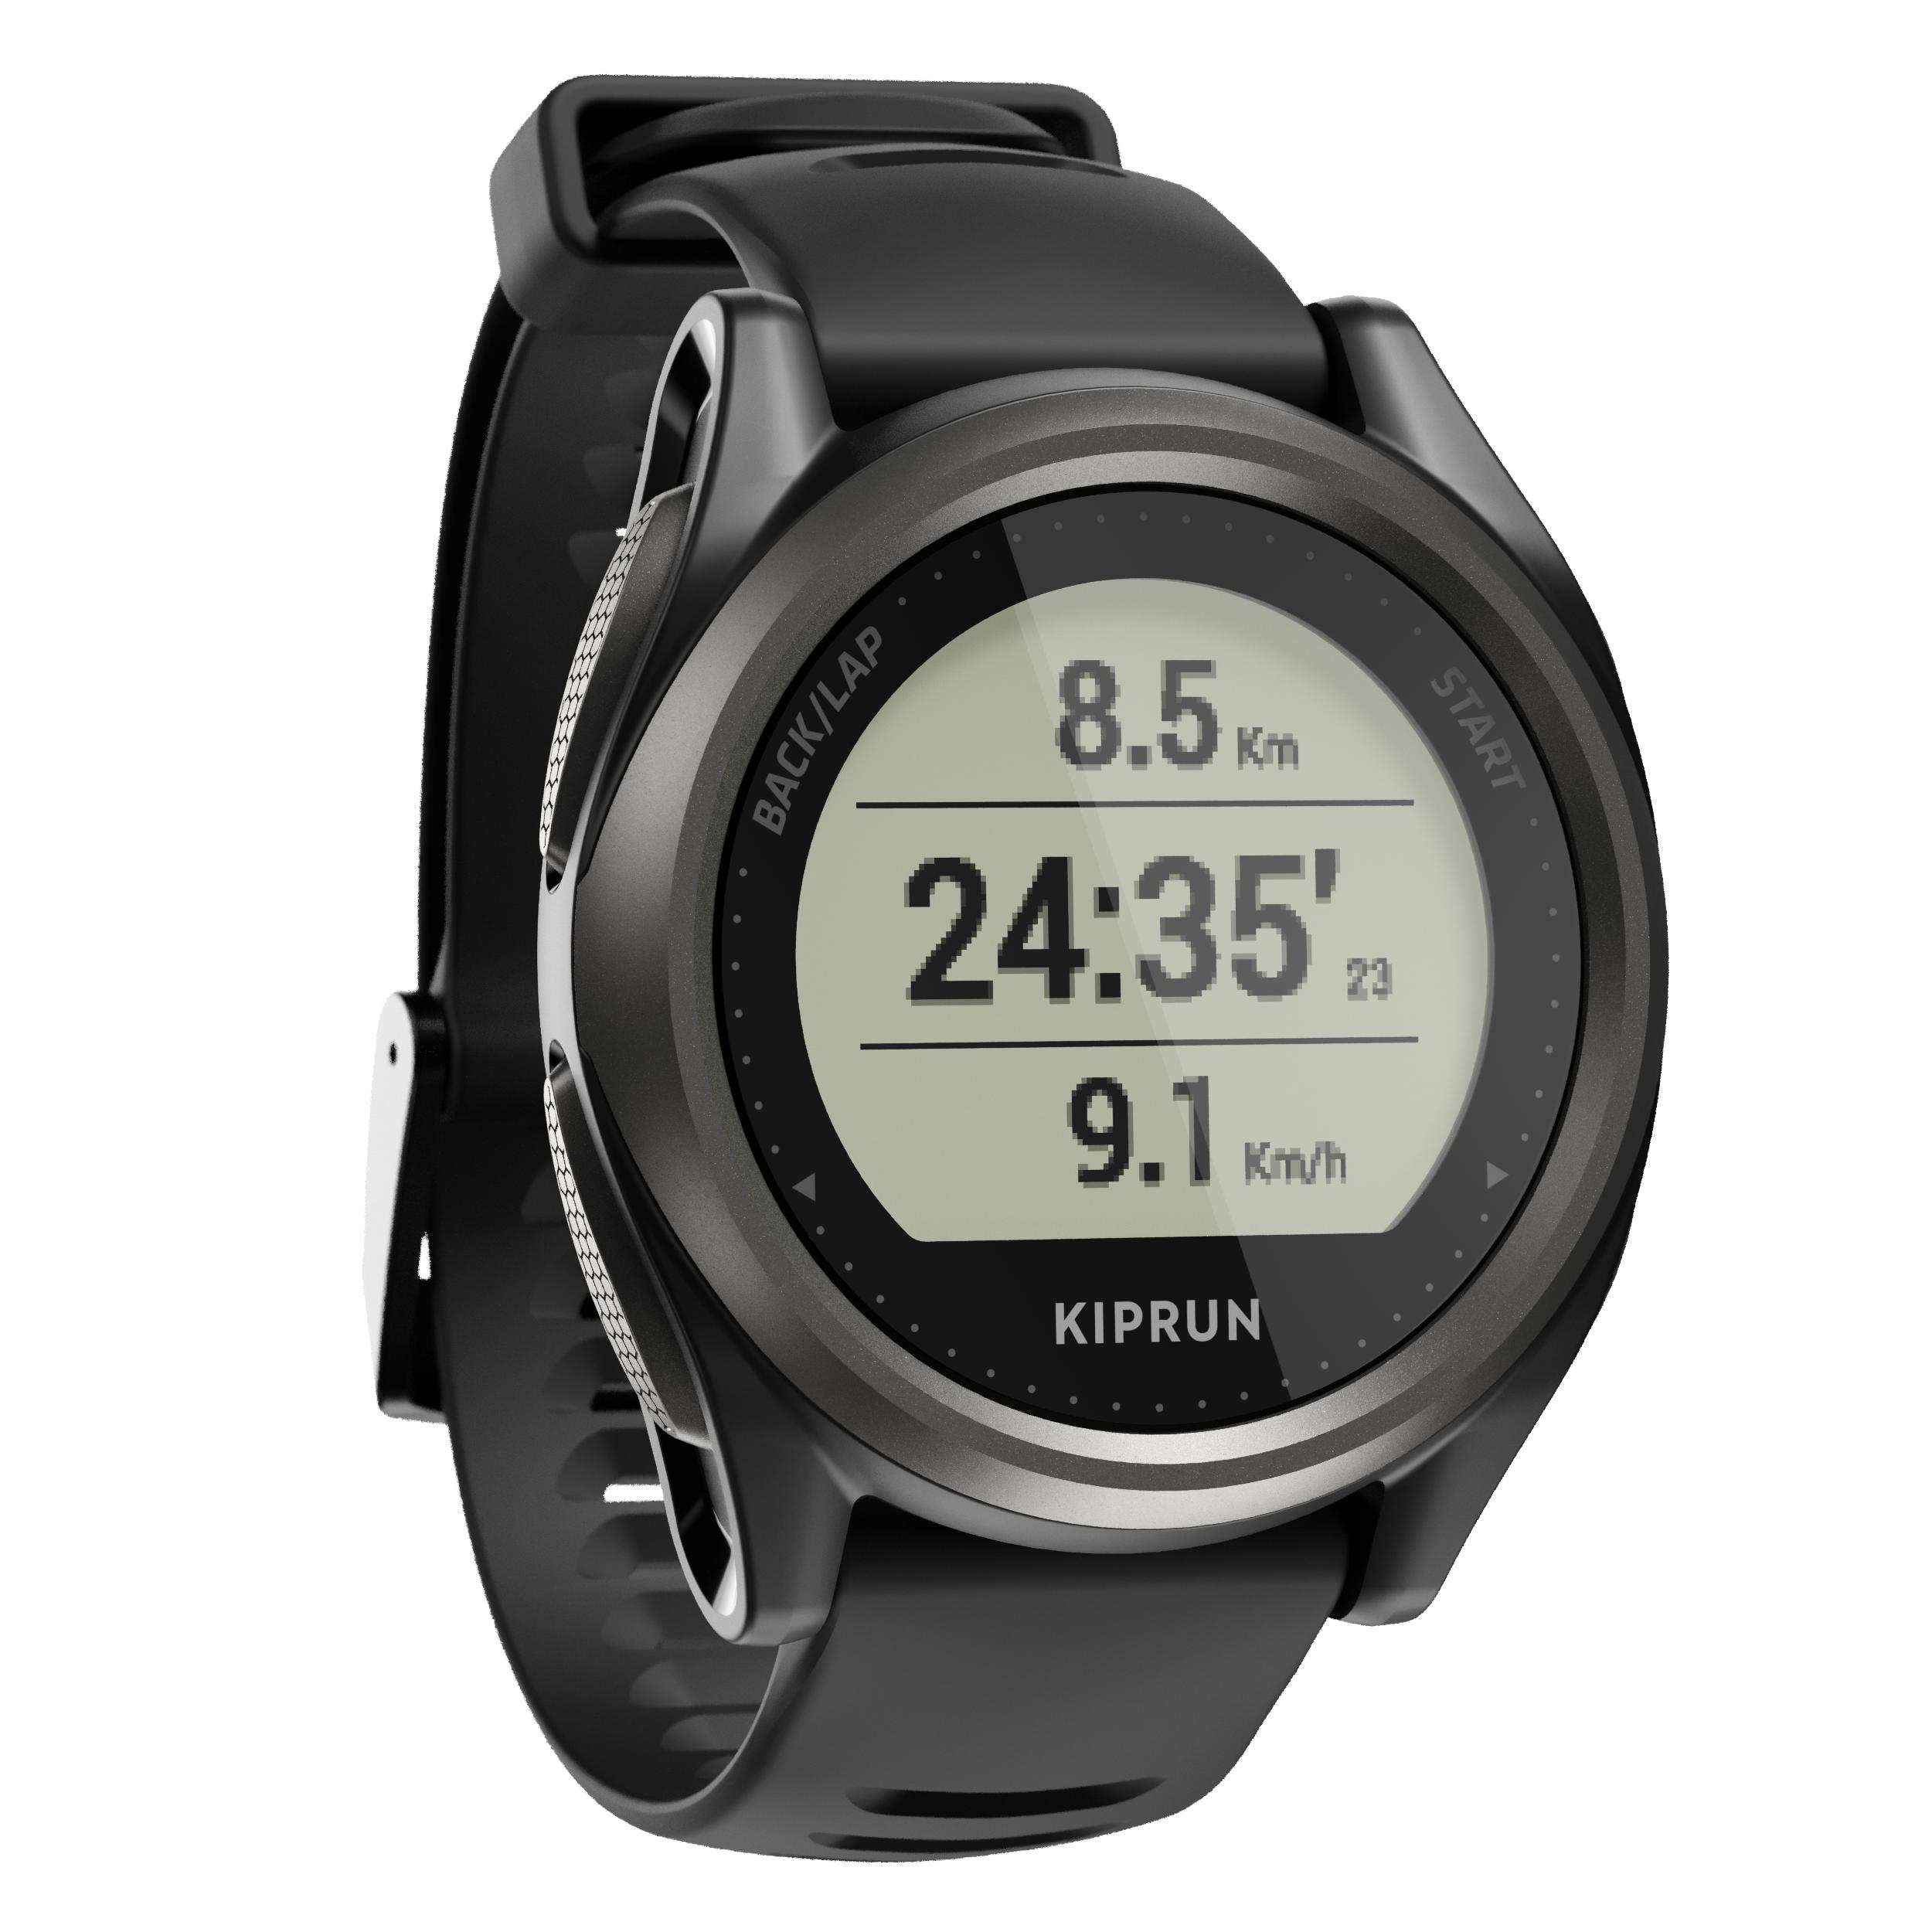 Buy Running stopwatch at Decathlon 